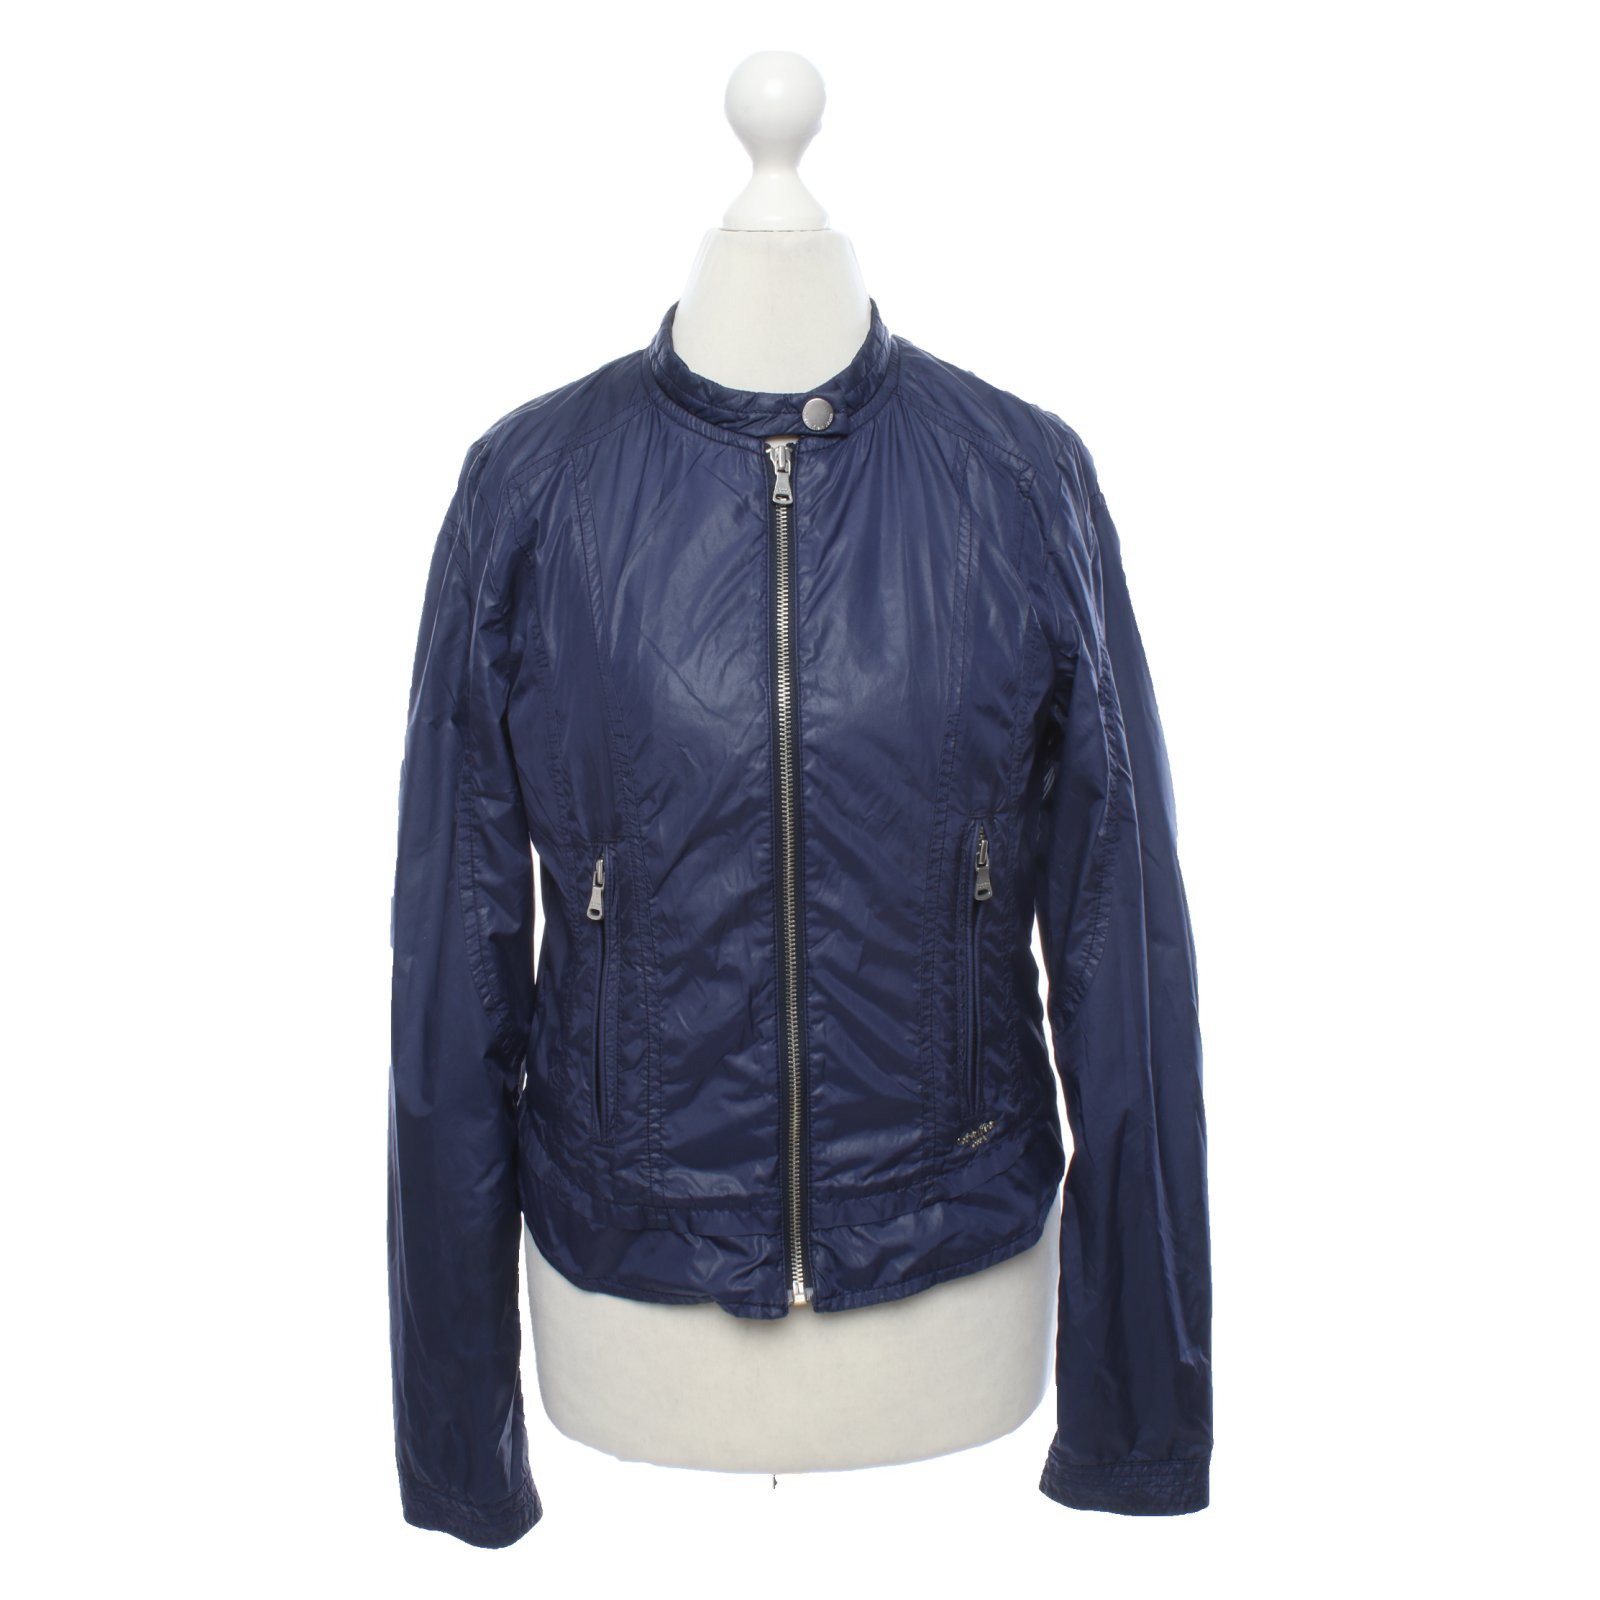 CALVIN KLEIN JEANS Women's Jacke/Mantel in Blau Size: S